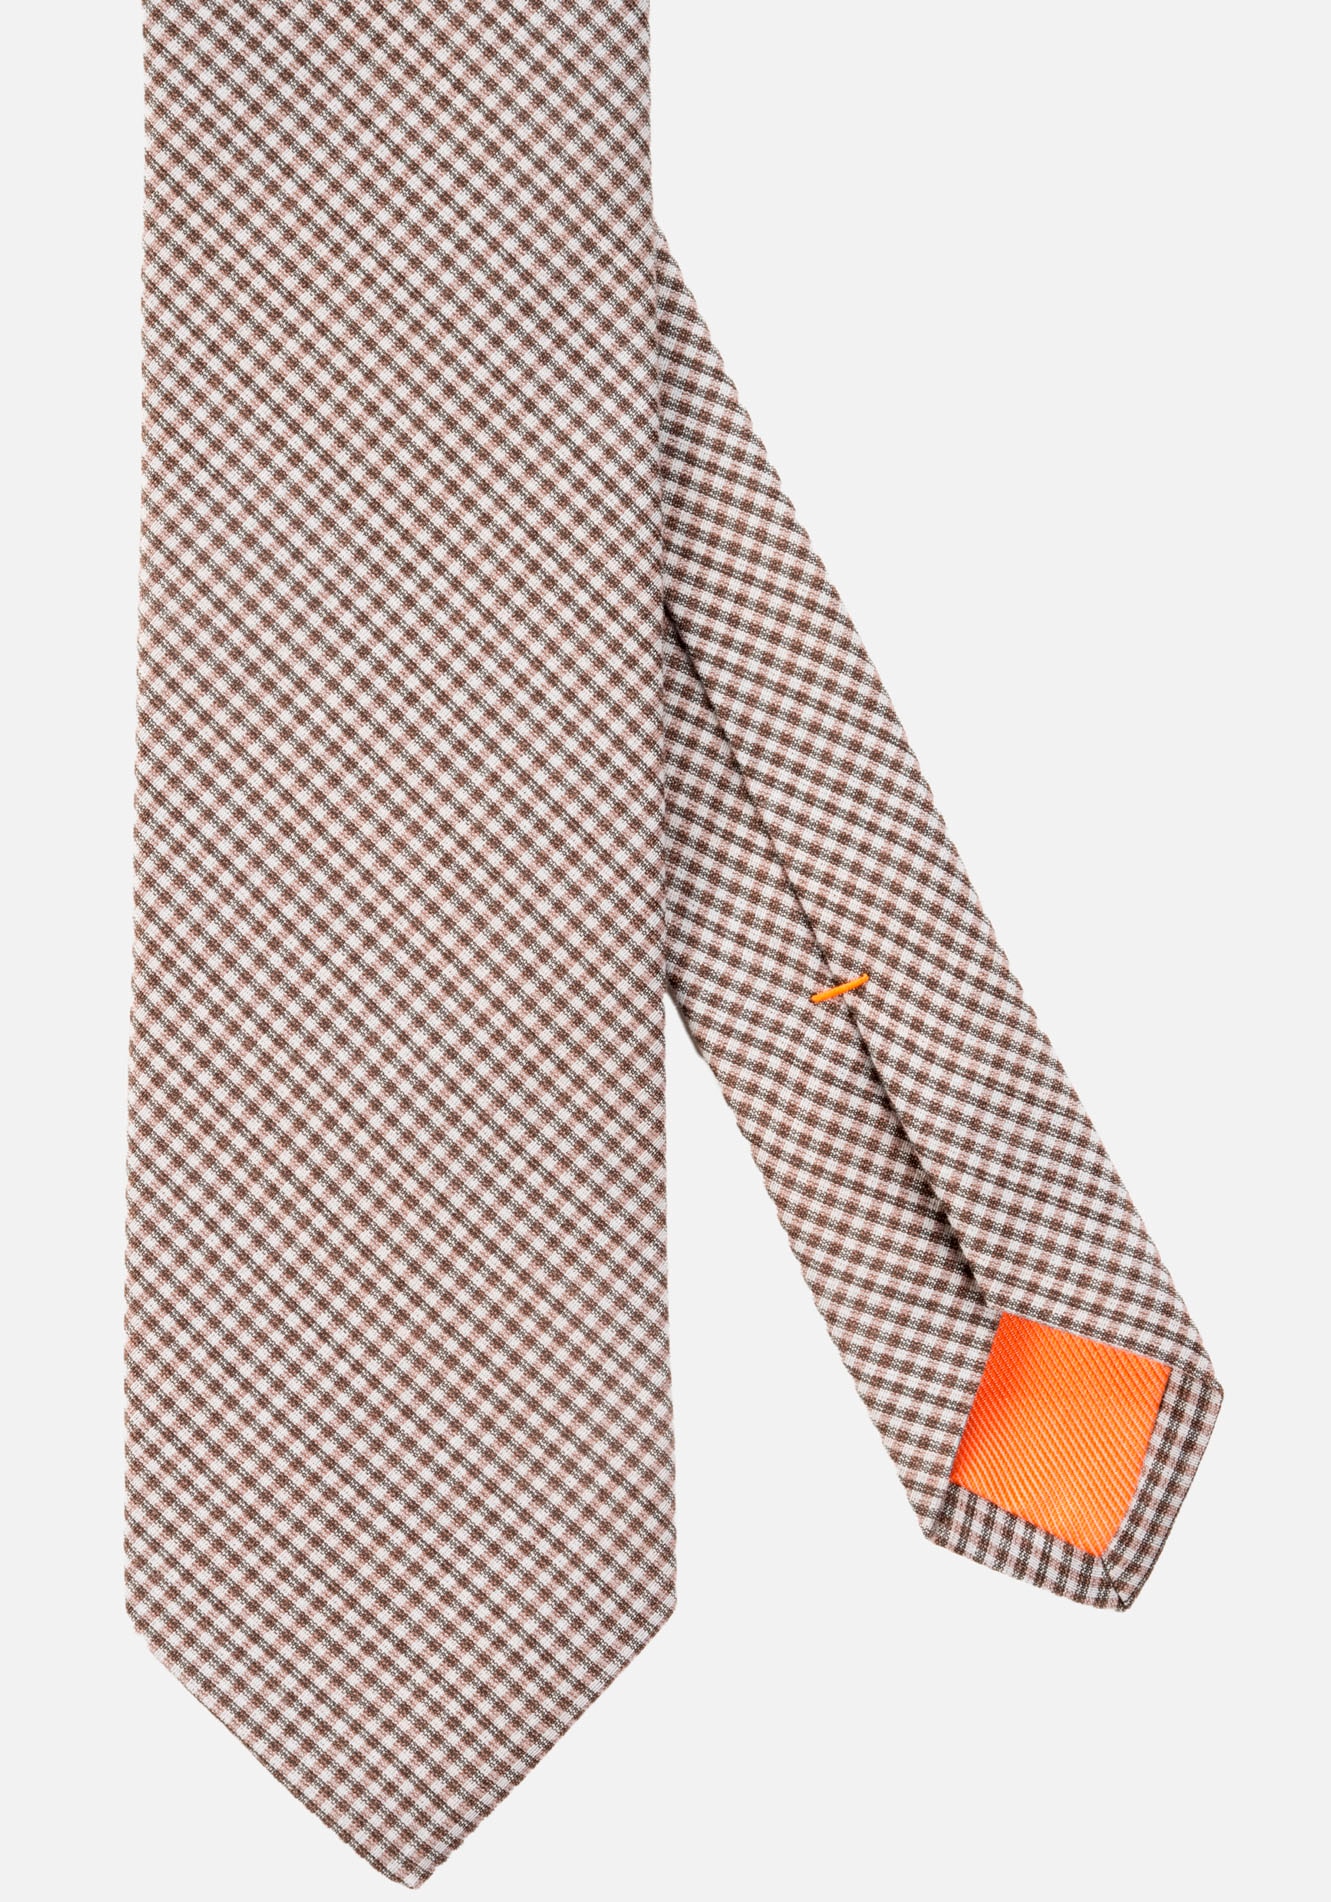 MONTI Krawatte, mit ausgefallenem Frühling-Sommer-Design